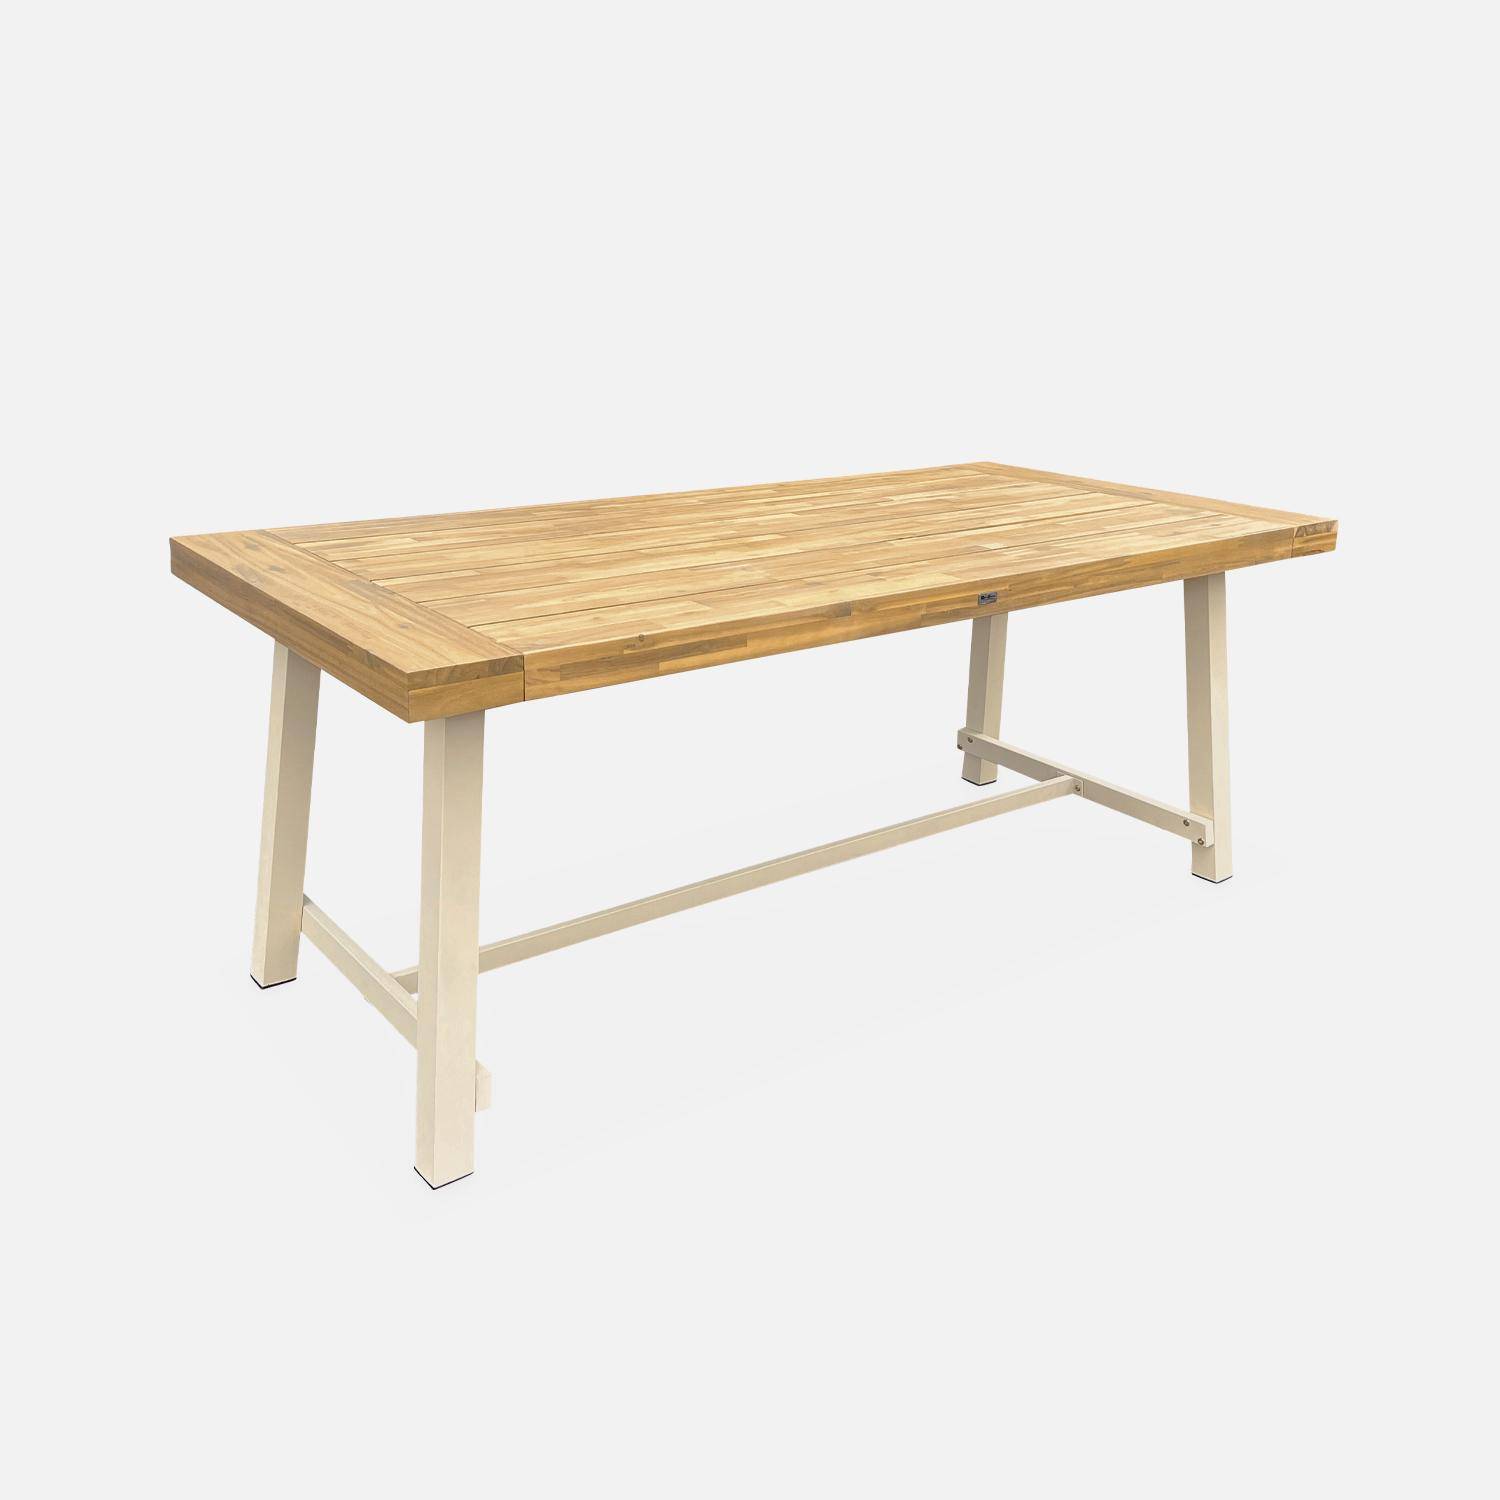 Table intérieur/extérieur en bois clair, effet teck et acier galvanisé ivoire, Fortaleza L190 x P91.5 x H76cm 6-8 places,sweeek,Photo3